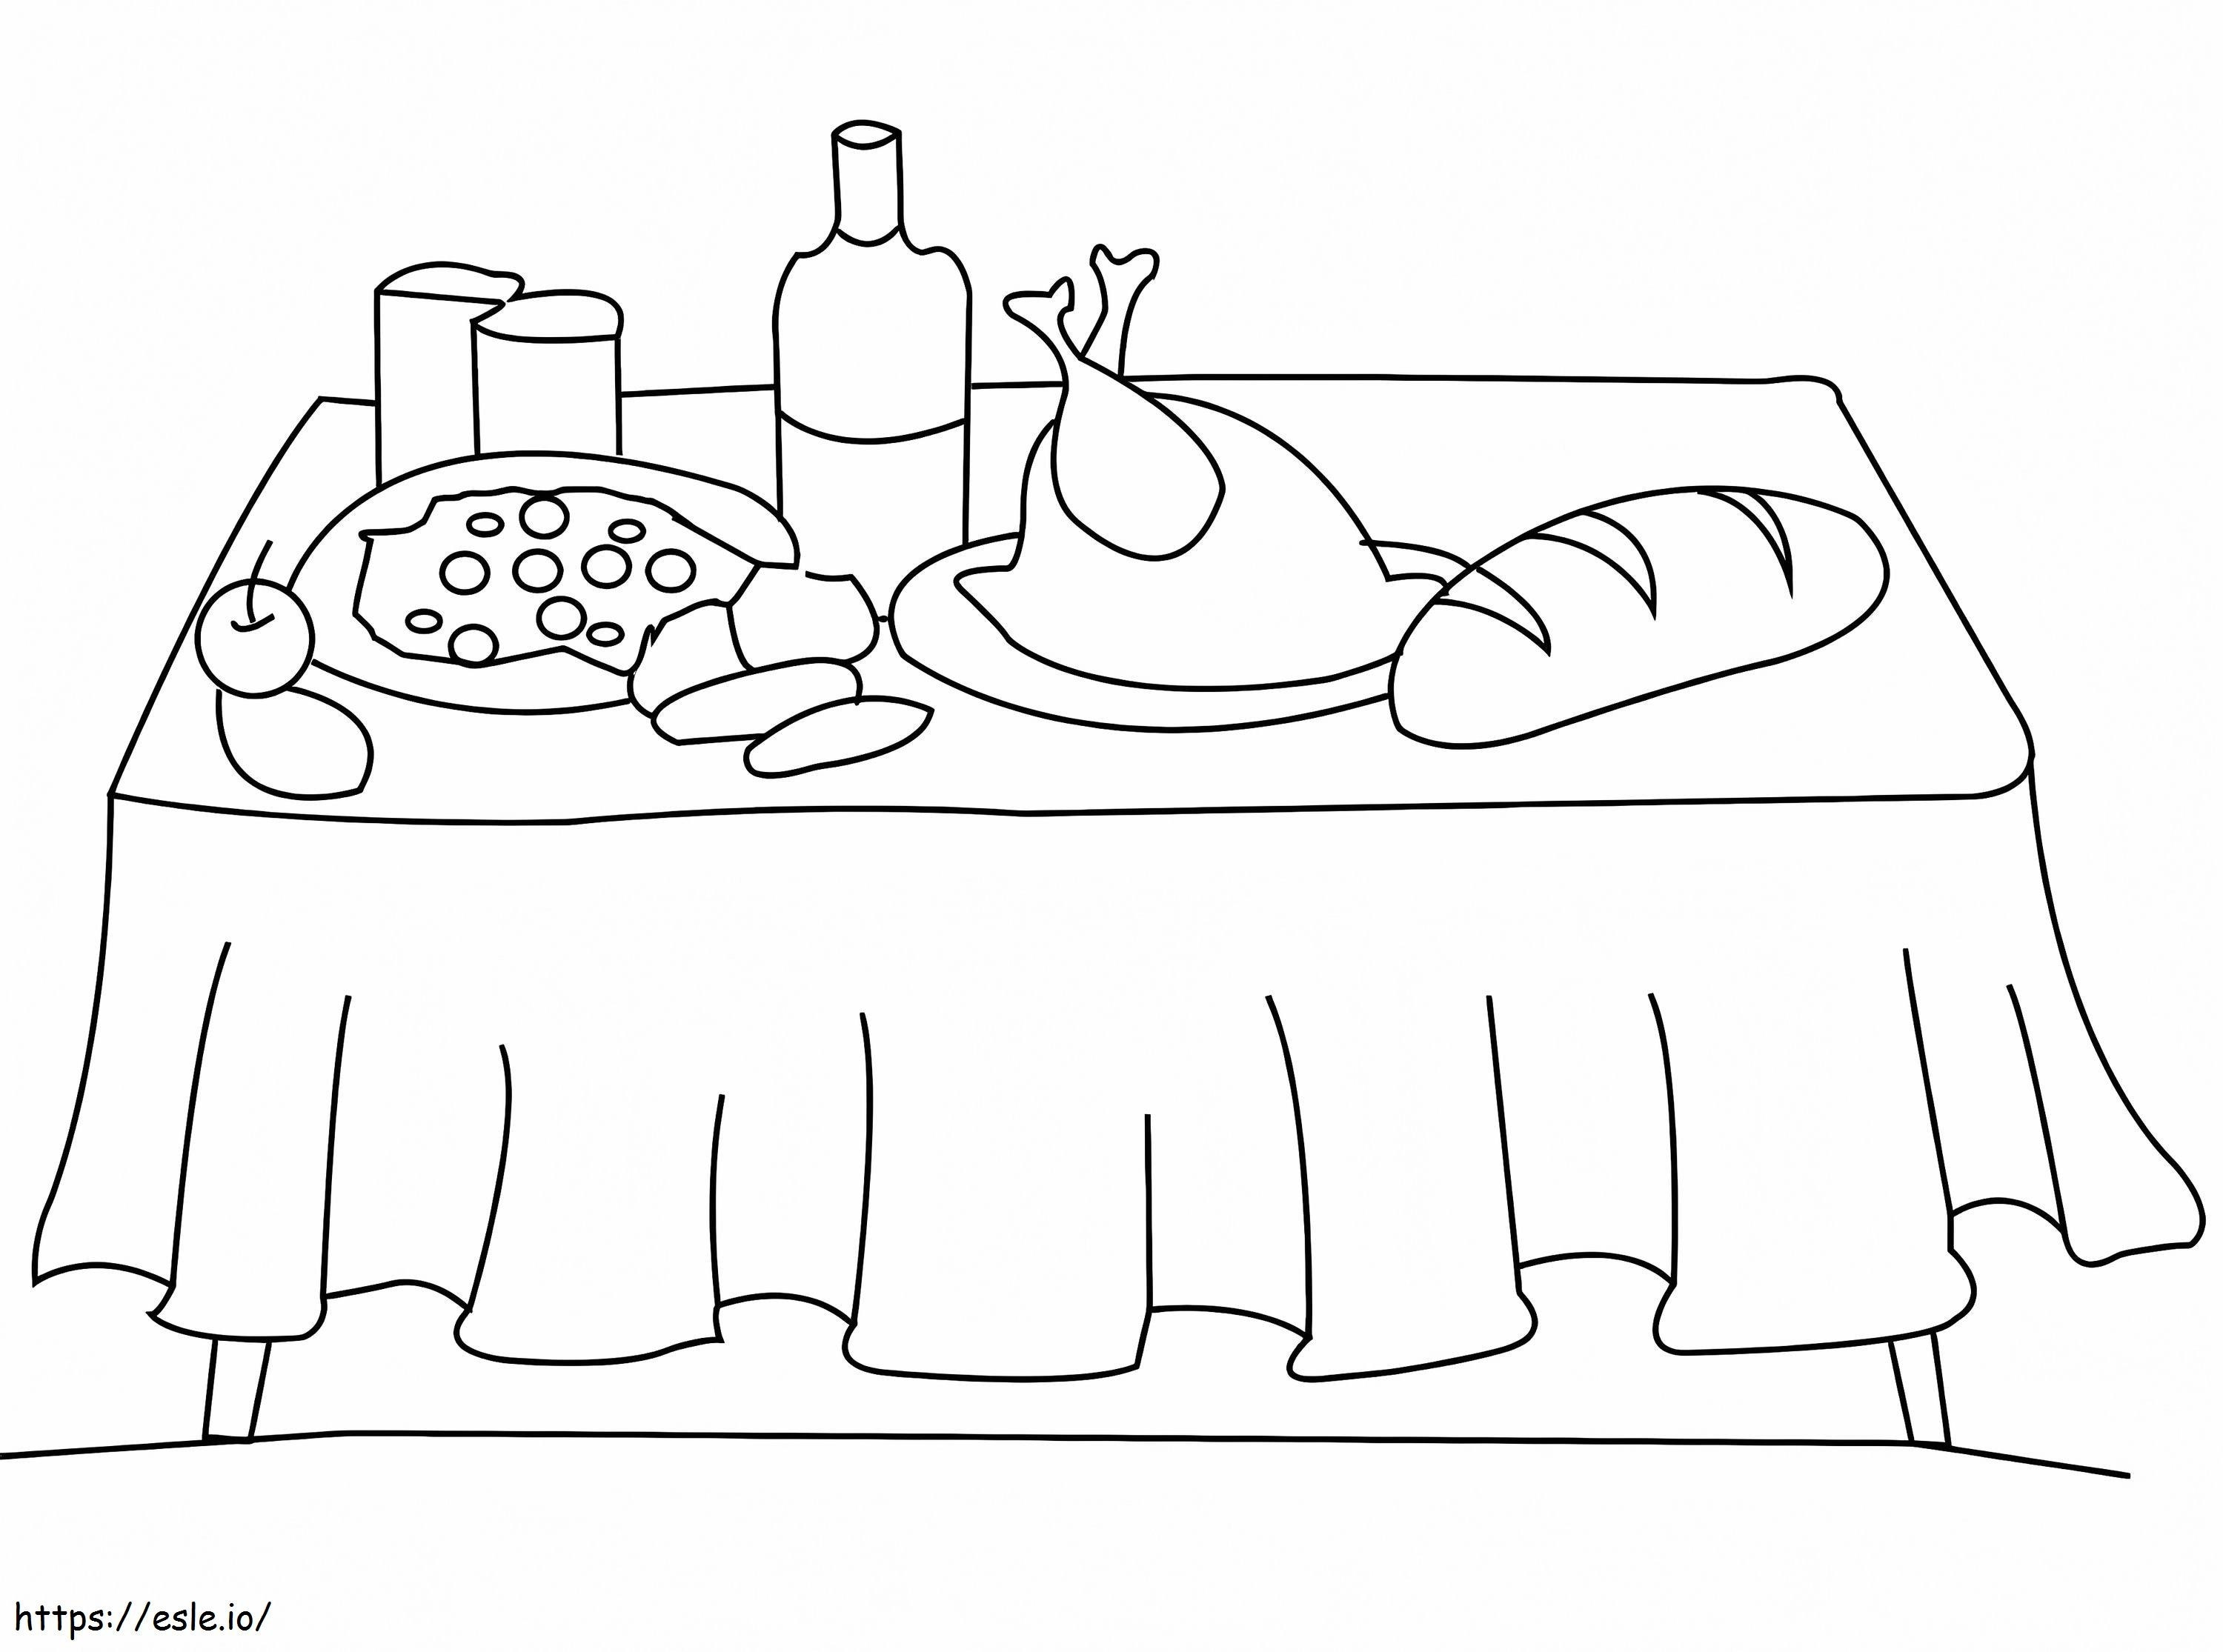 Lebensmittel auf dem Tisch ausmalbilder